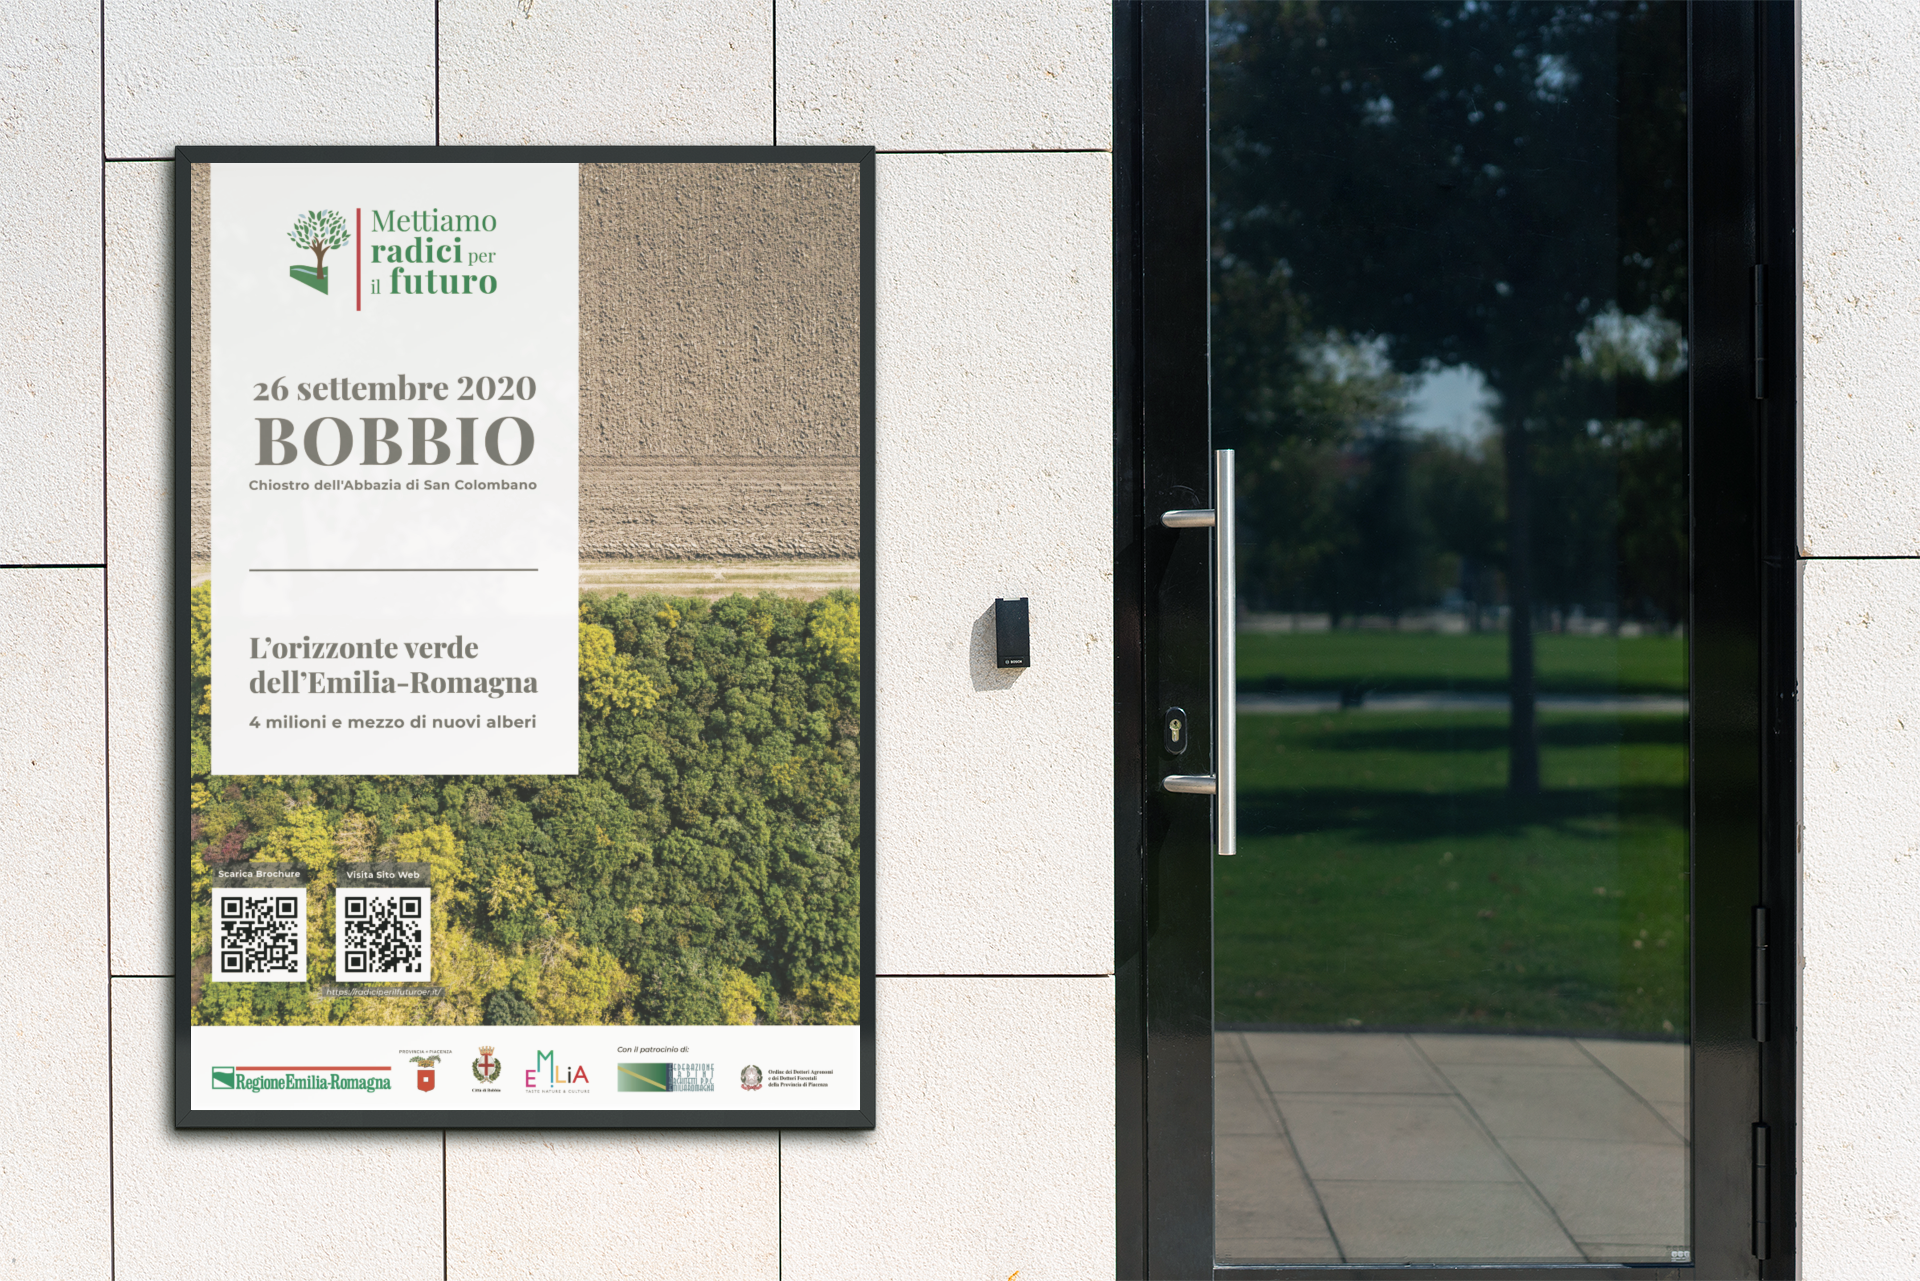 Giornata di Bobbio - “Mettiamo radici per il futuro”, progetto della Regione Emilia Romagna